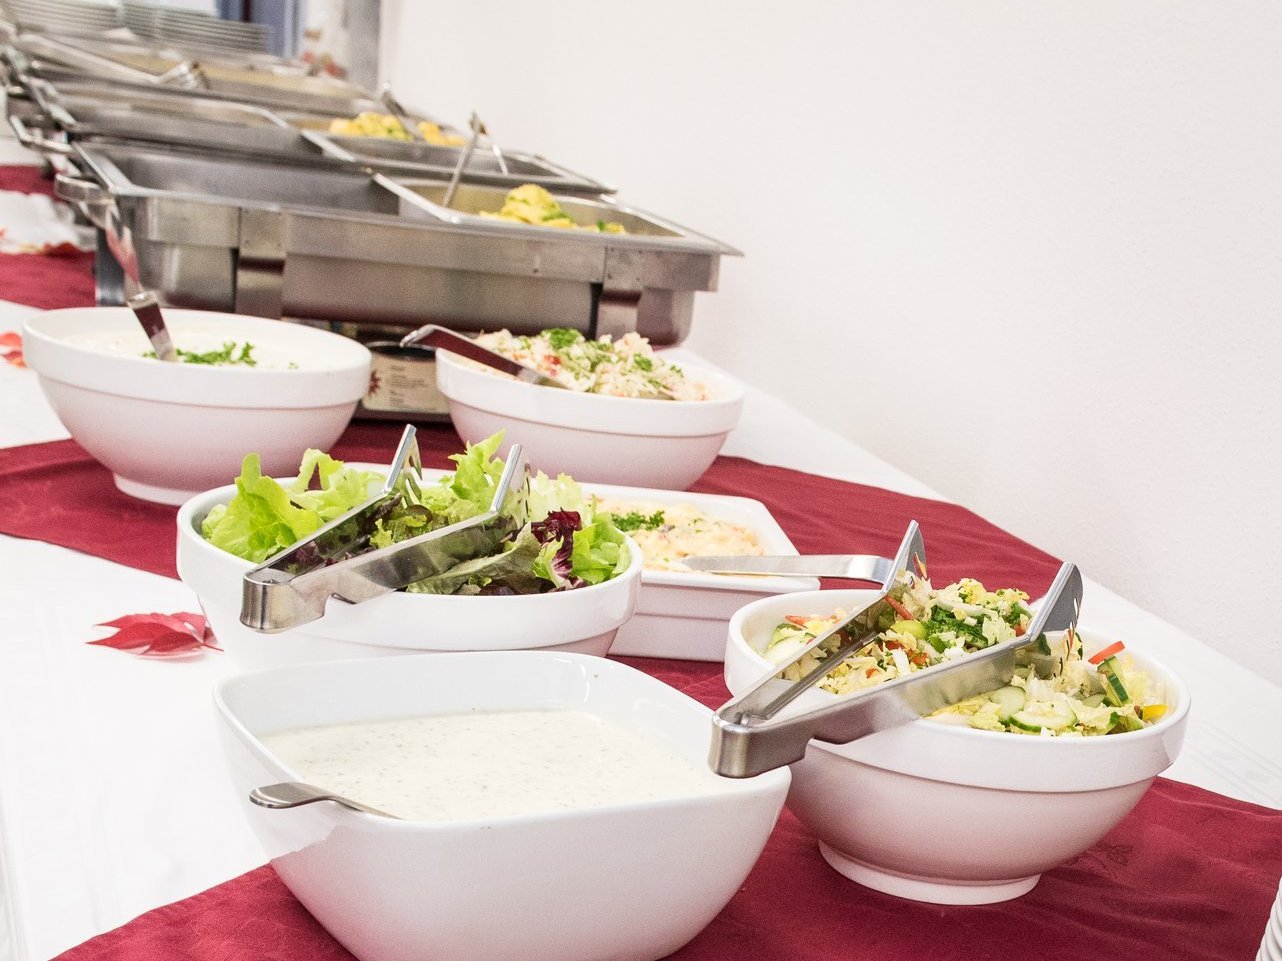 Essen am Buffet - es zeigt einen langen Tisch mit großer gemischter Obstschale, vielen Salaten mit Dressings und im Hintergrund sind verschiedene Hauptgerichte zu erahnen